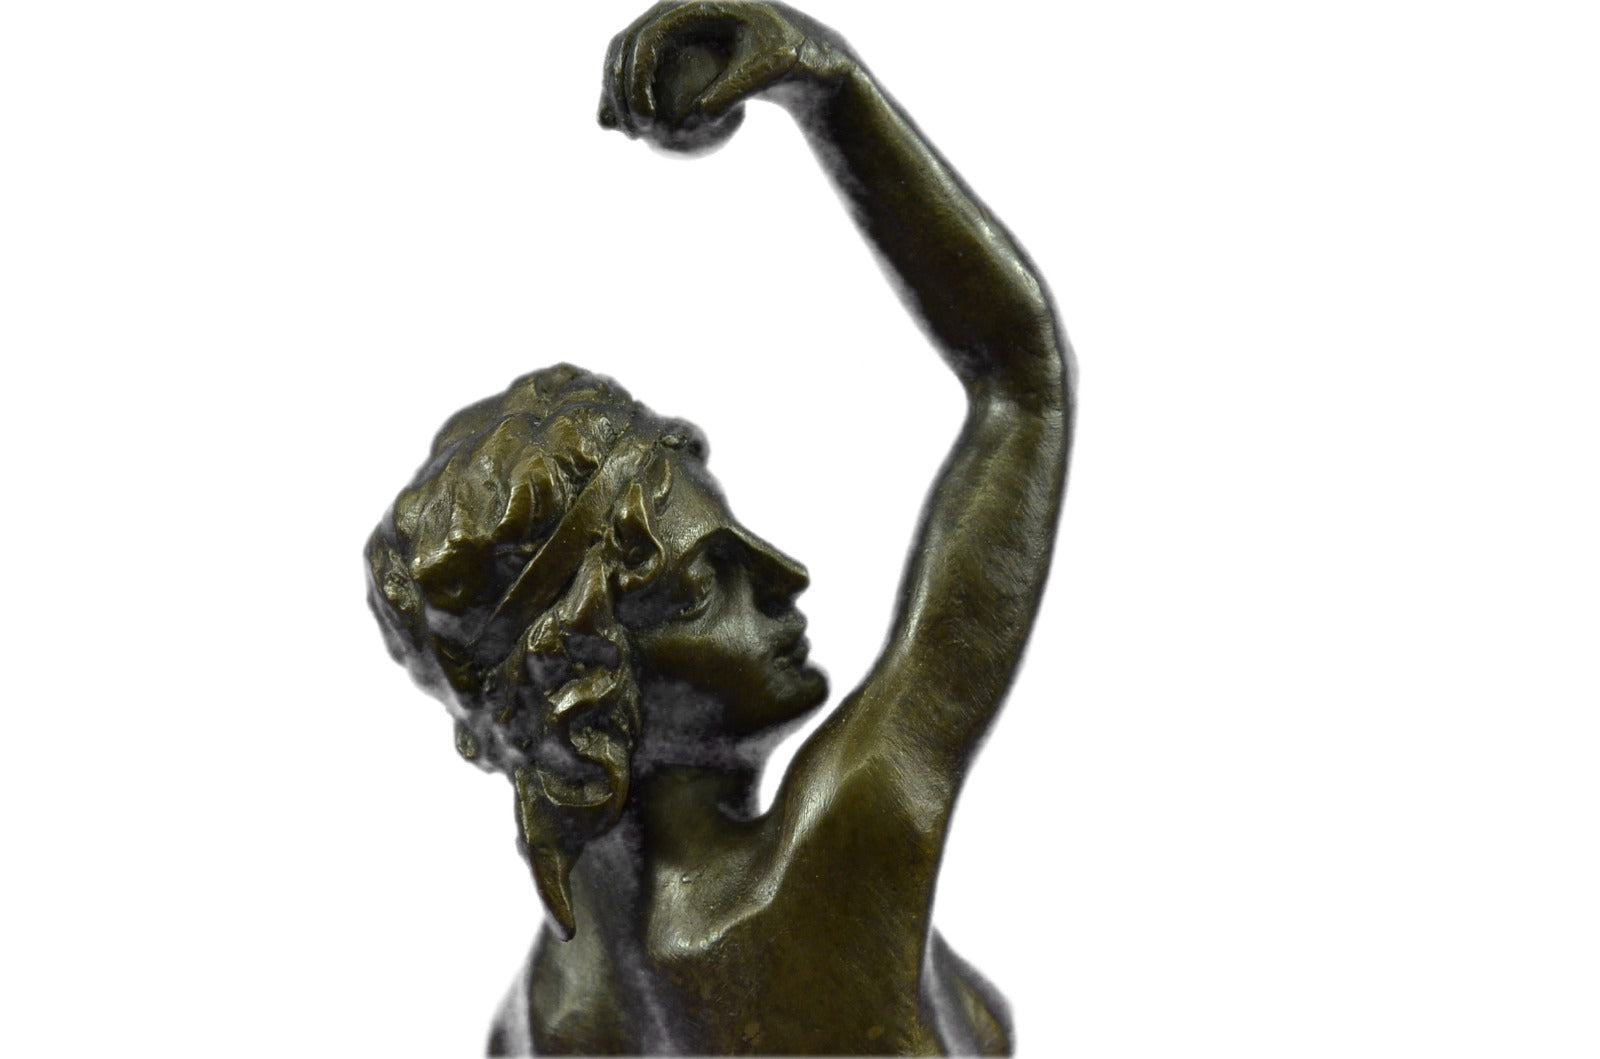 Discus Thrower Nude Statue Bronze Sculpture Roman Female Figurine Art Decor Sale